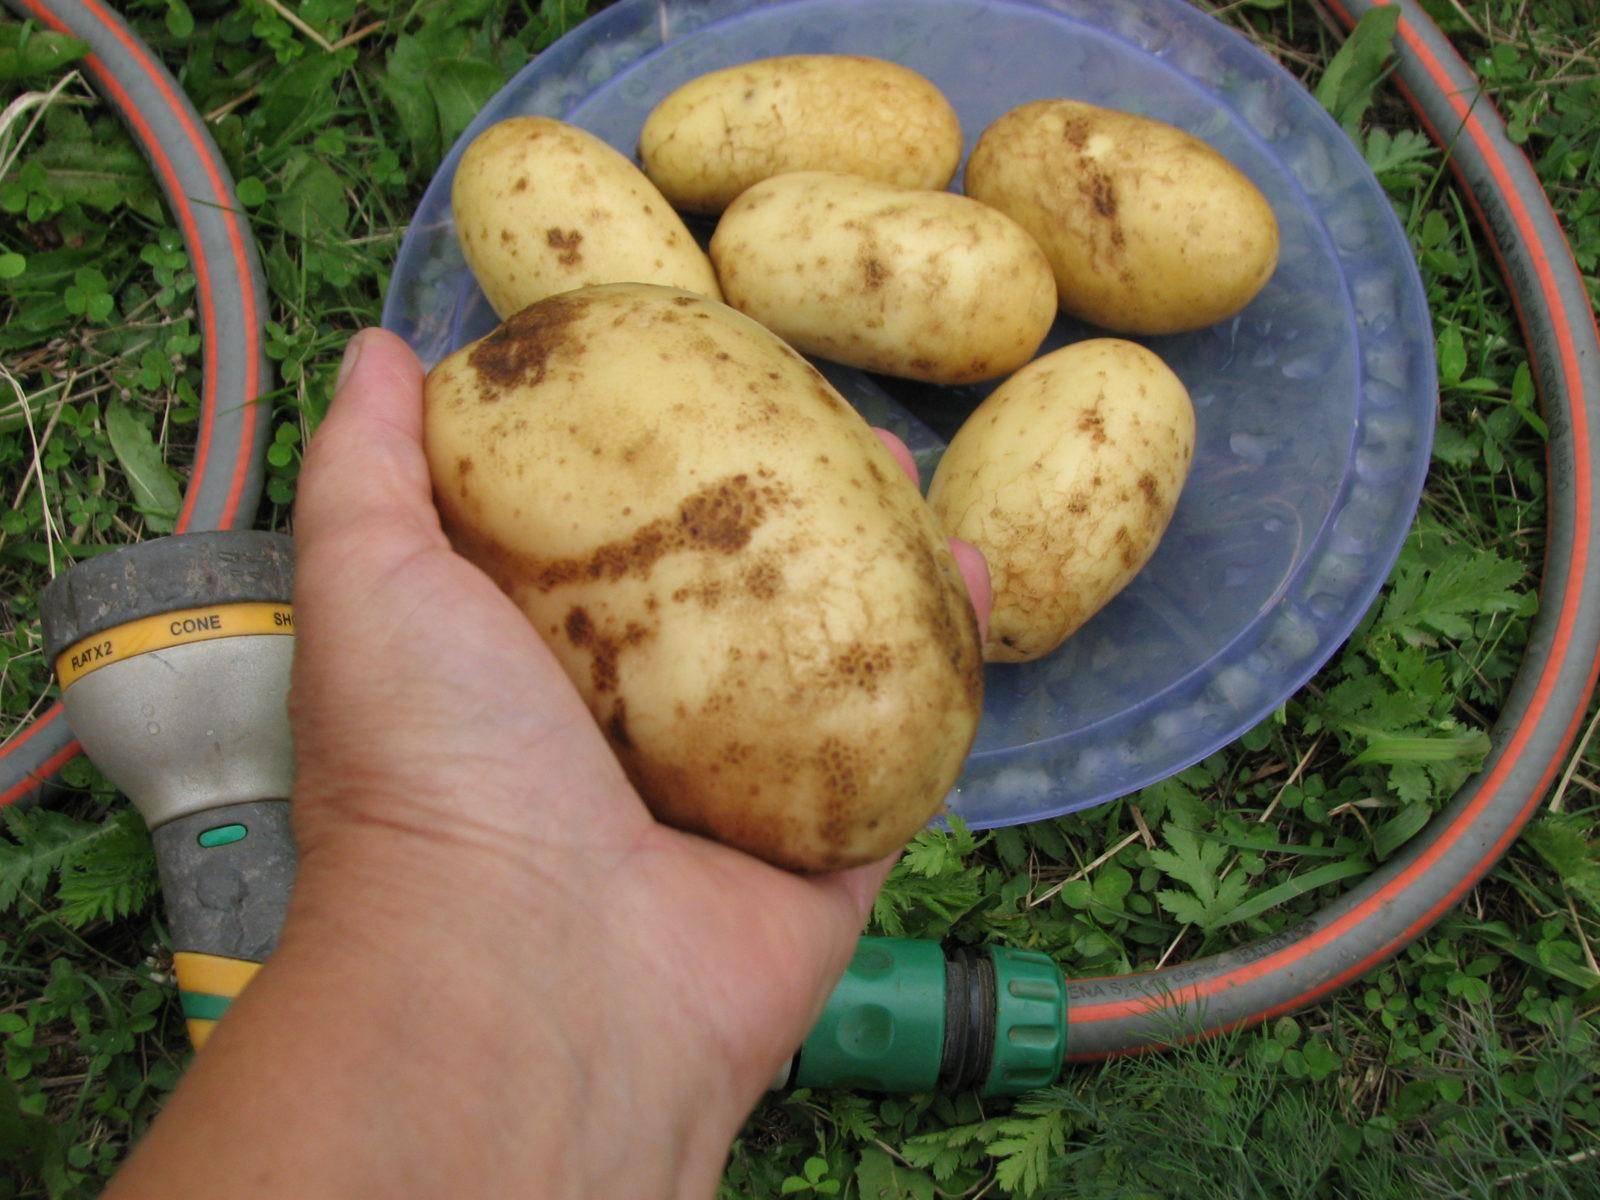 Картофель латона: описание сорта, характеристики, фото